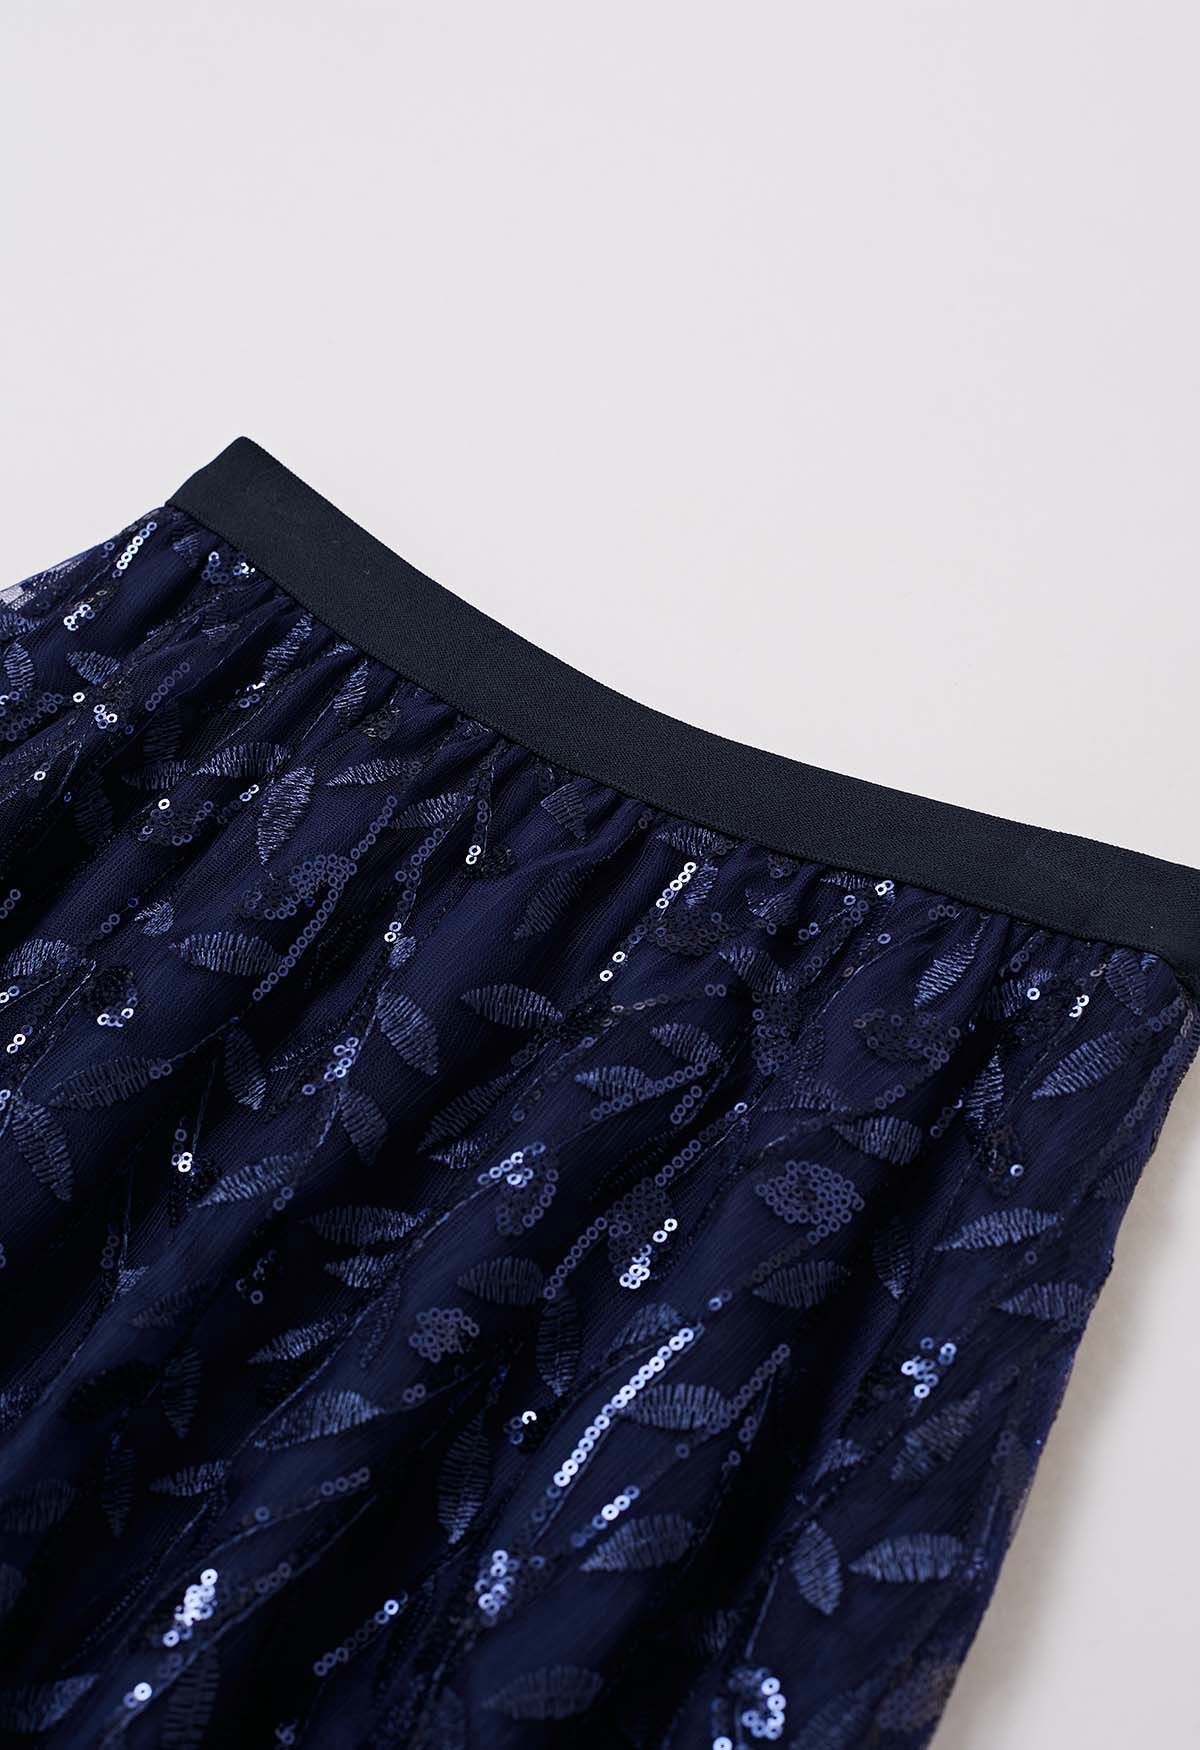 Falda midi de tul de malla con hojas bordadas y lentejuelas en azul marino